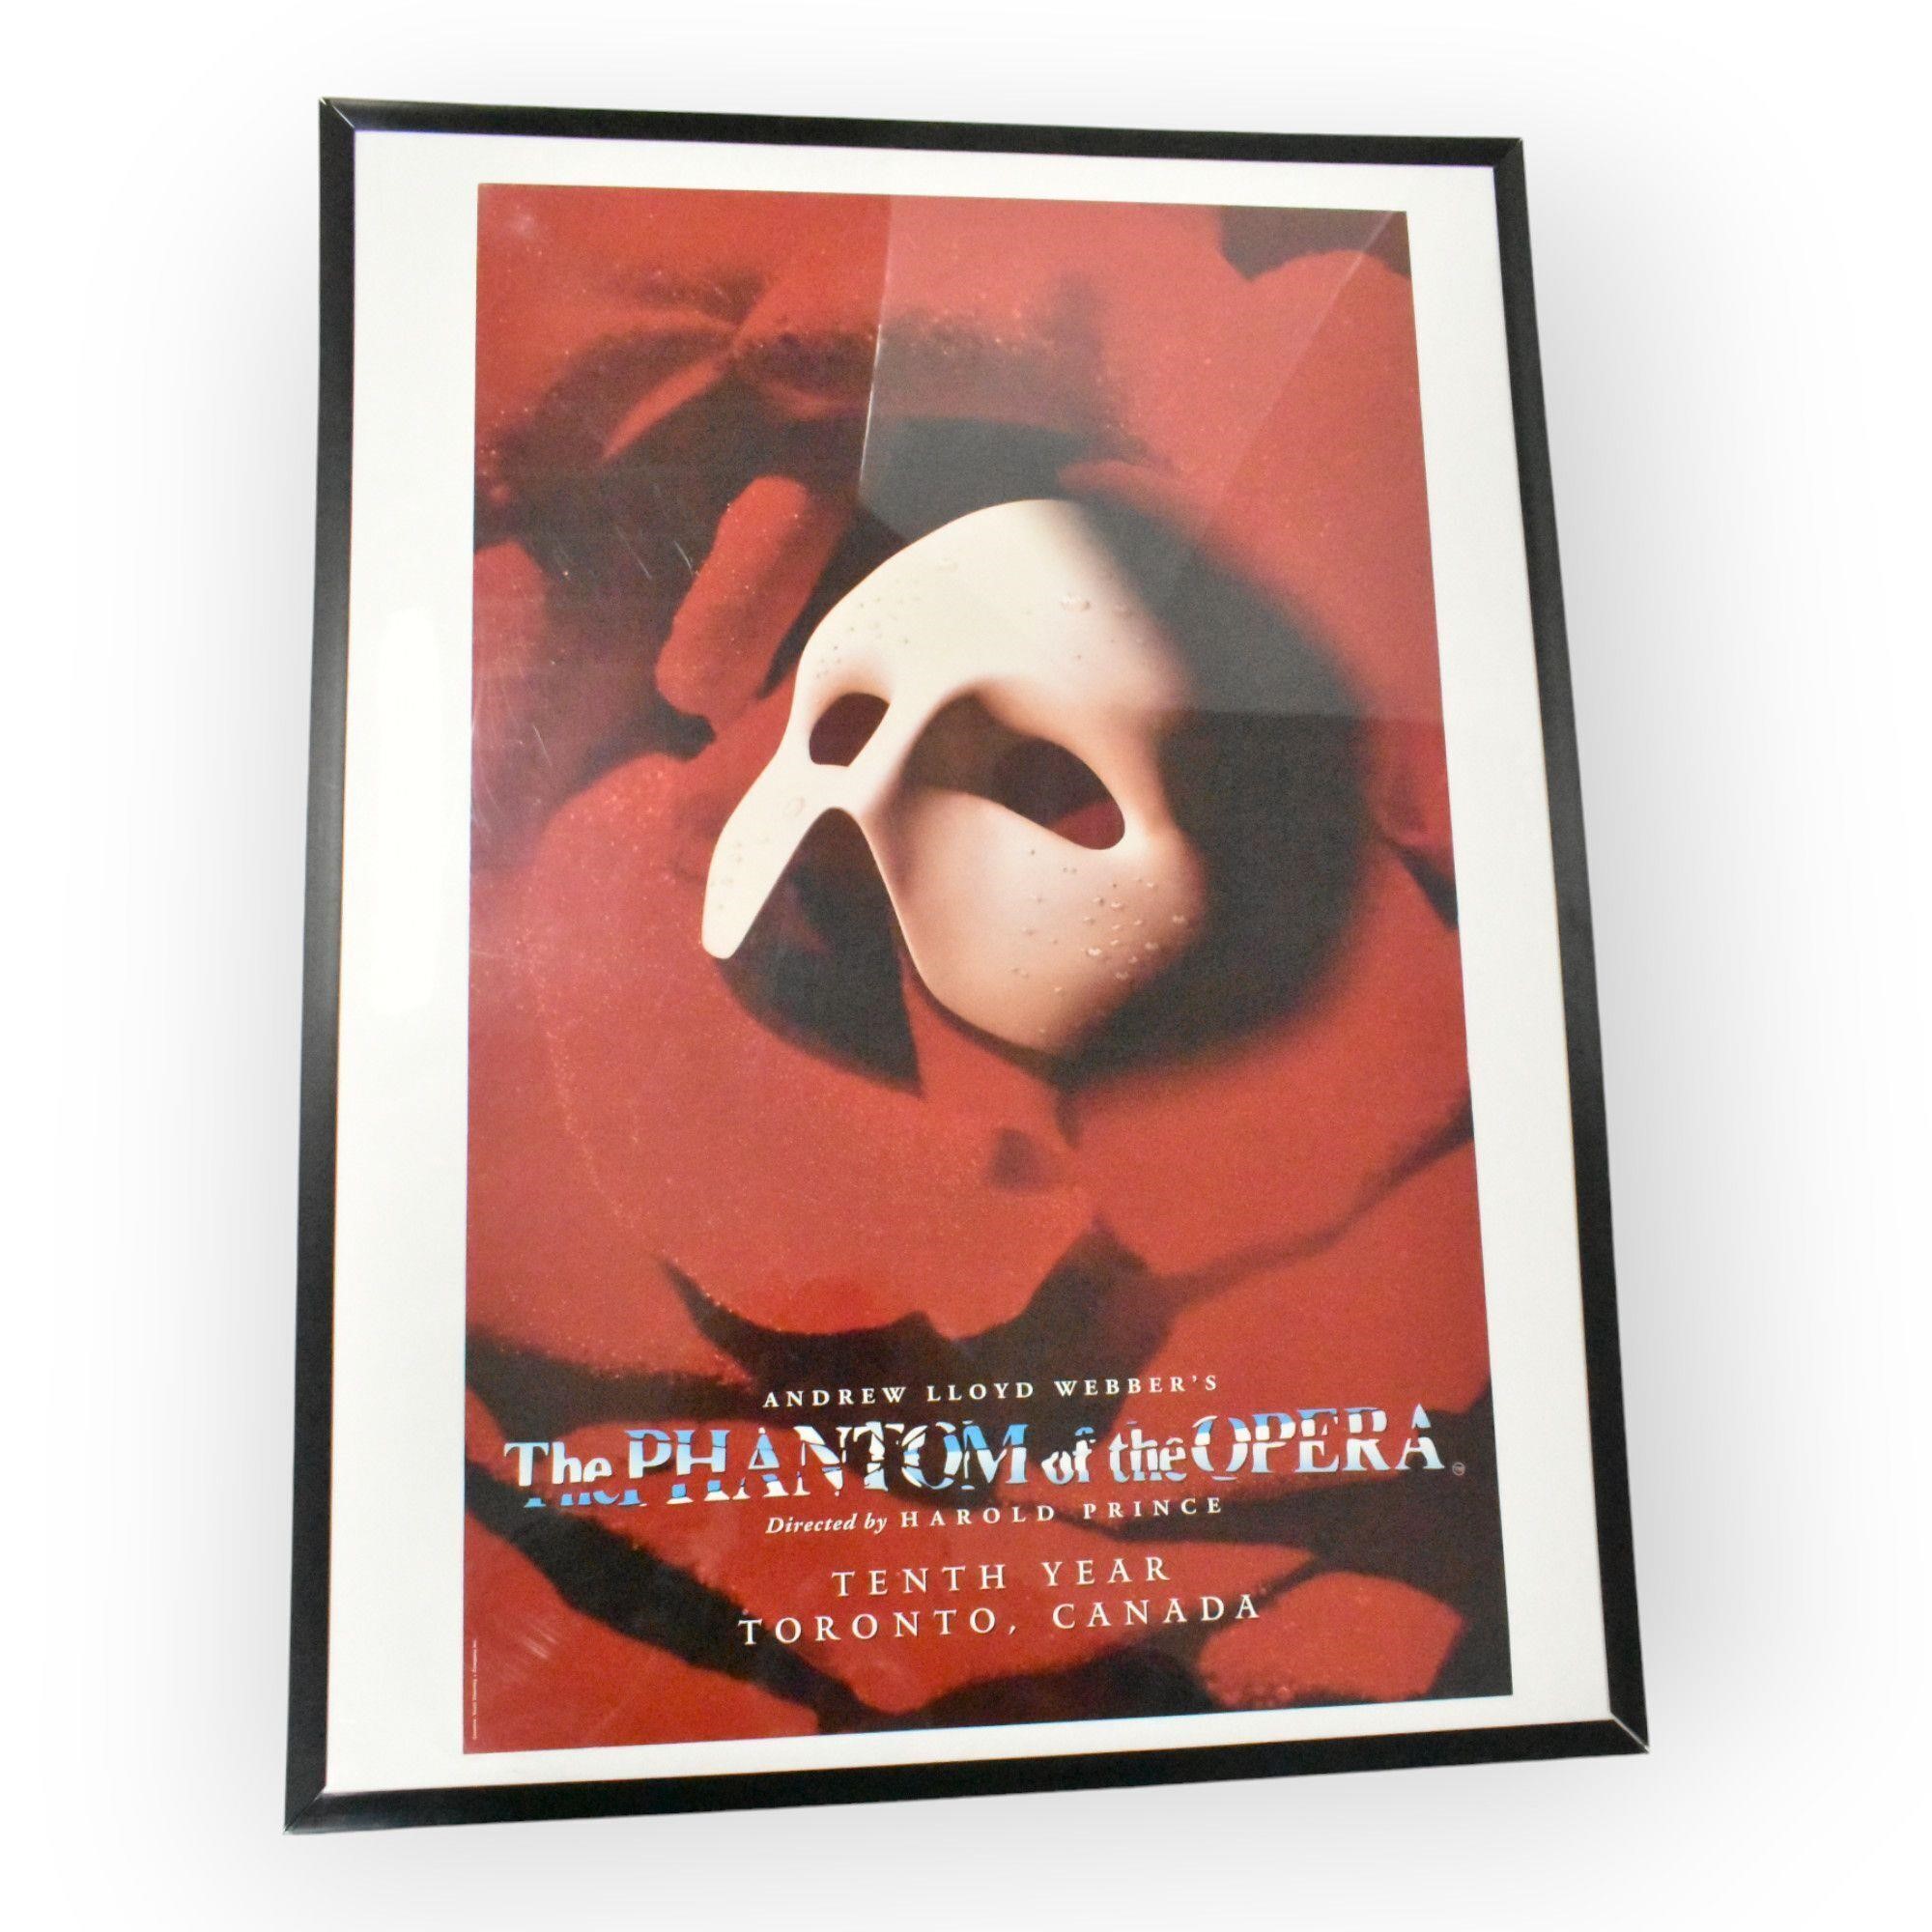 Print "Phantom of the Opera" 10th Year Anniversary